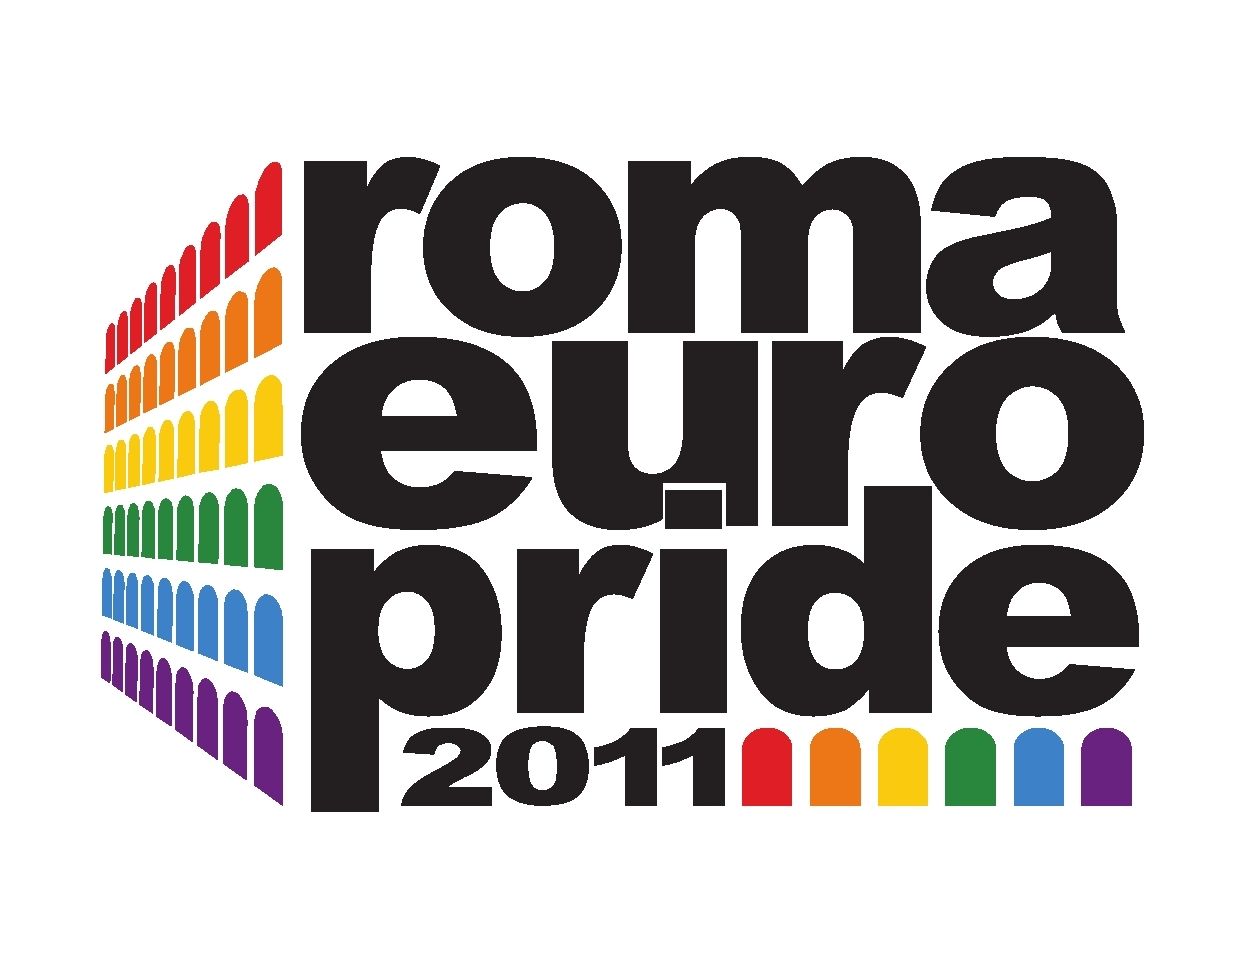 Ufficiale: Lady Gaga al Roma Euro Pride 2011!